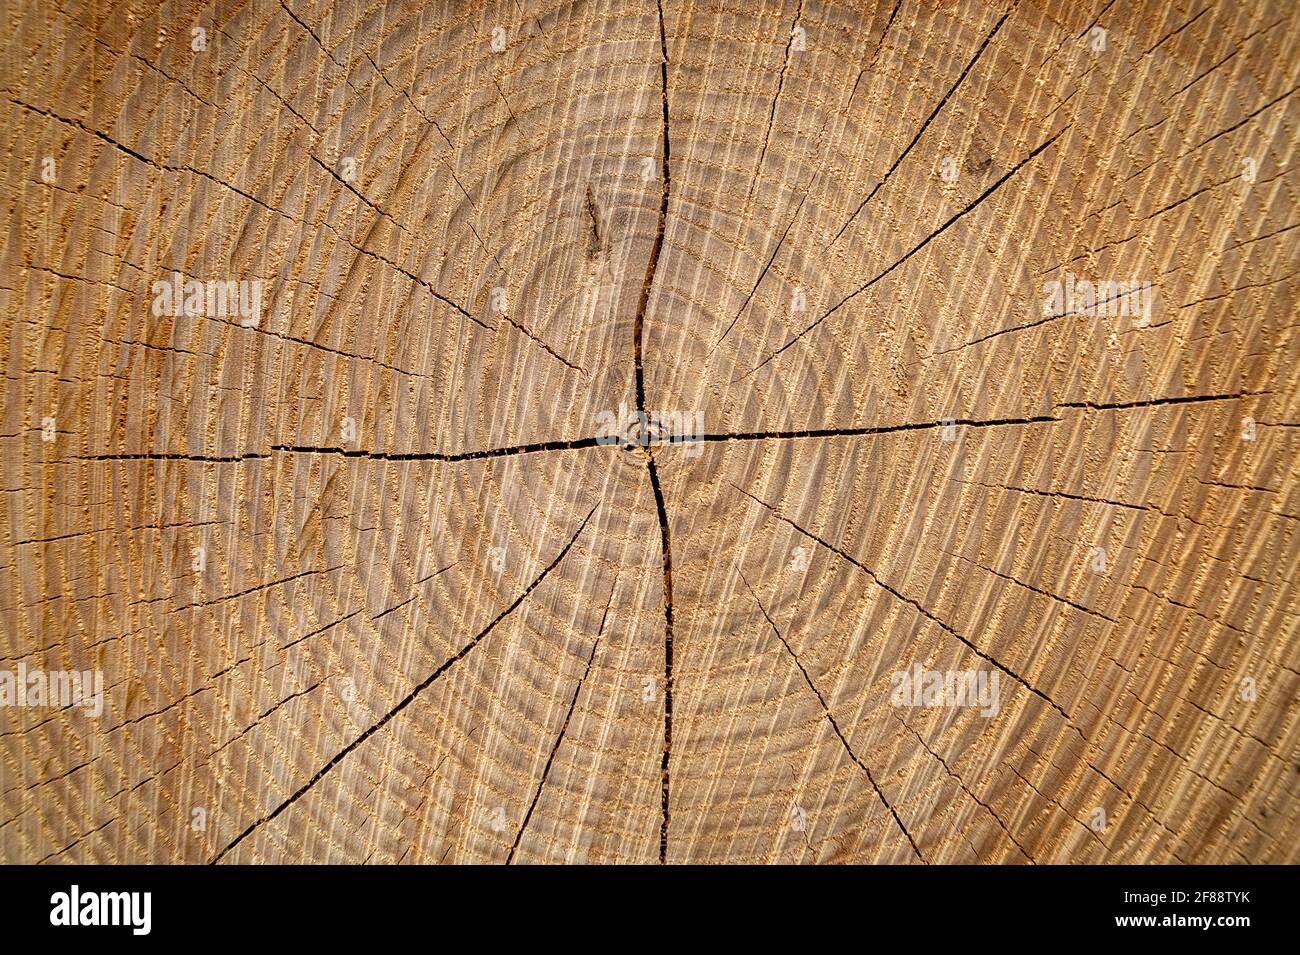 Grand morceau circulaire de section en bois avec le motif de texture des anneaux d'arbre et des fissures, gros plan Banque D'Images